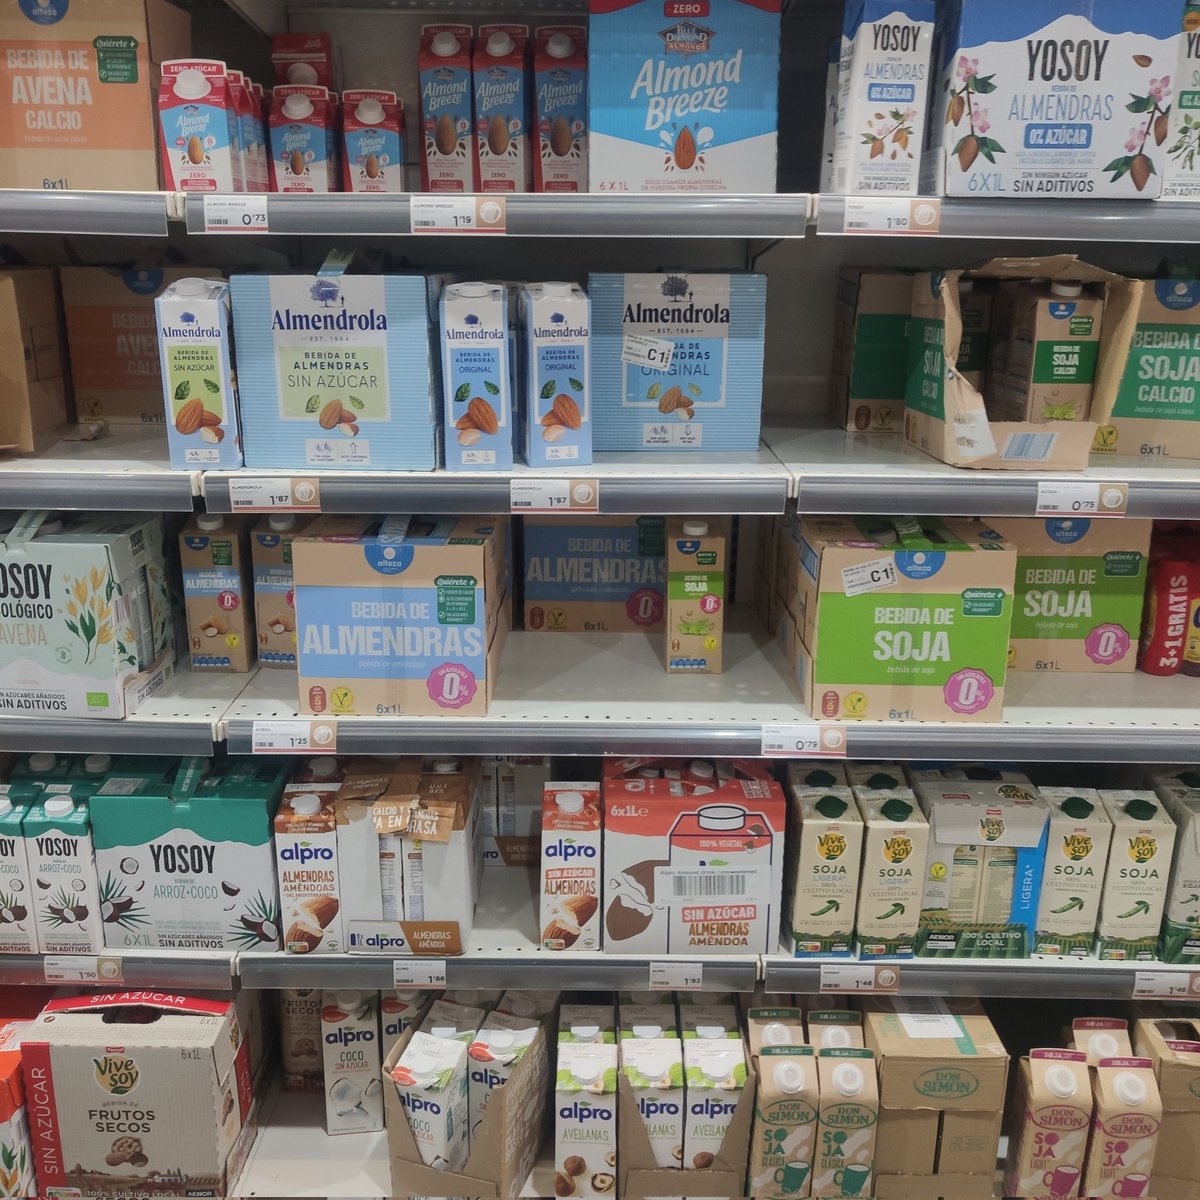 La reconversión de la industria láctea es posible. 

Sólo hay que ver en las estanterías de los supermercados espacios más grandes destinados a las leches vegetales. Menos contaminación, menos sufrimiento animal. 

Tú haces posible el cambio.

#GoVeganForThePlanet